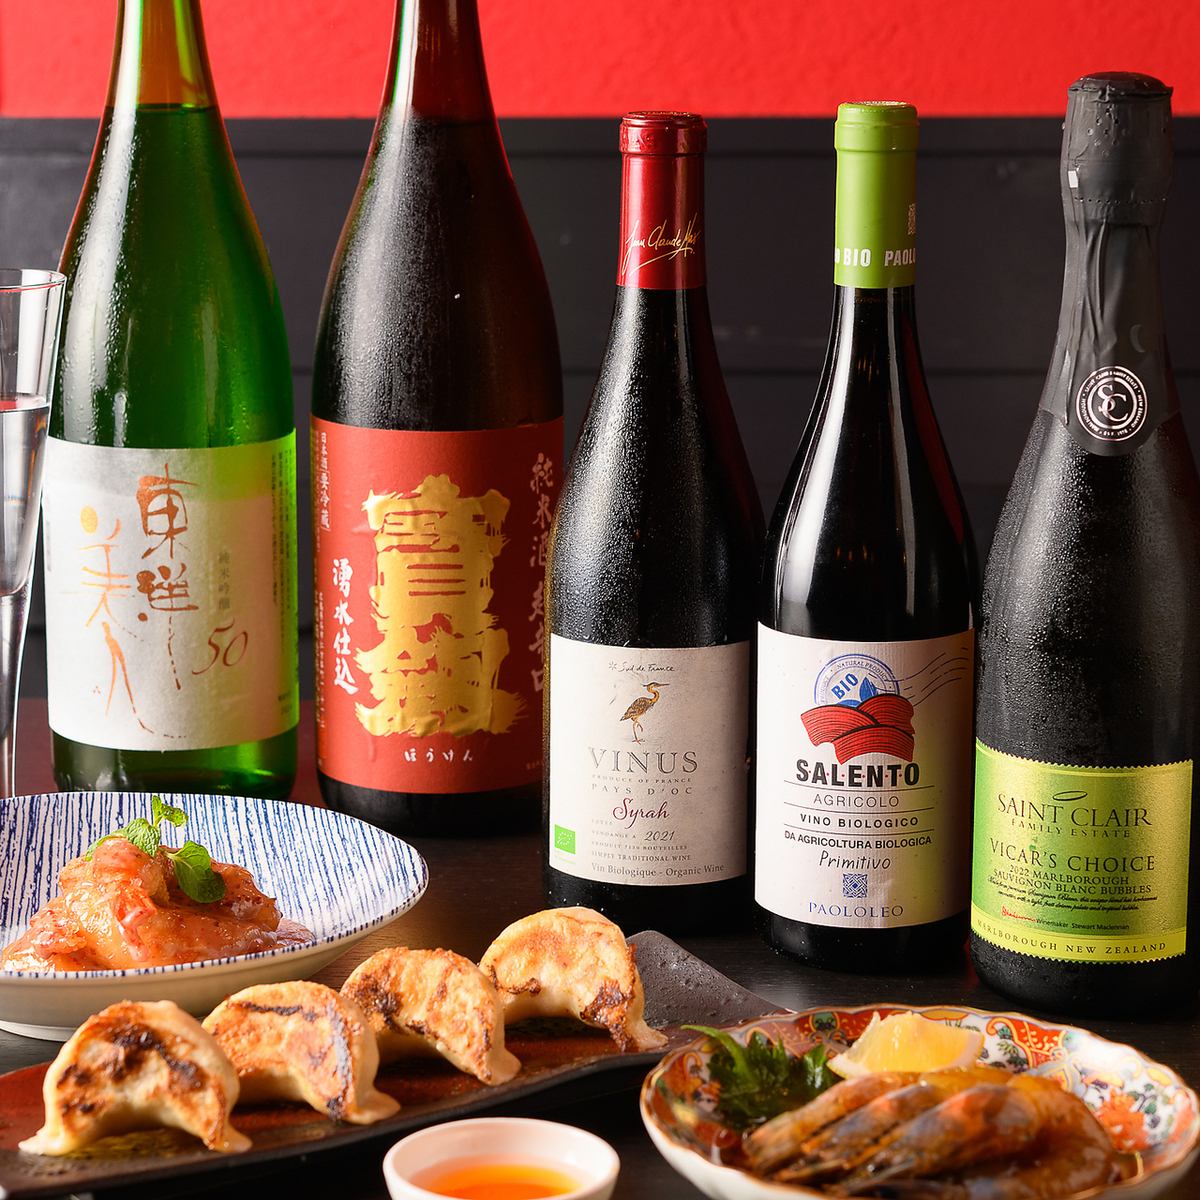 와인과 일본술의 종류가 풍부하다! 술을 좋아하기에는 참지 않는다!!